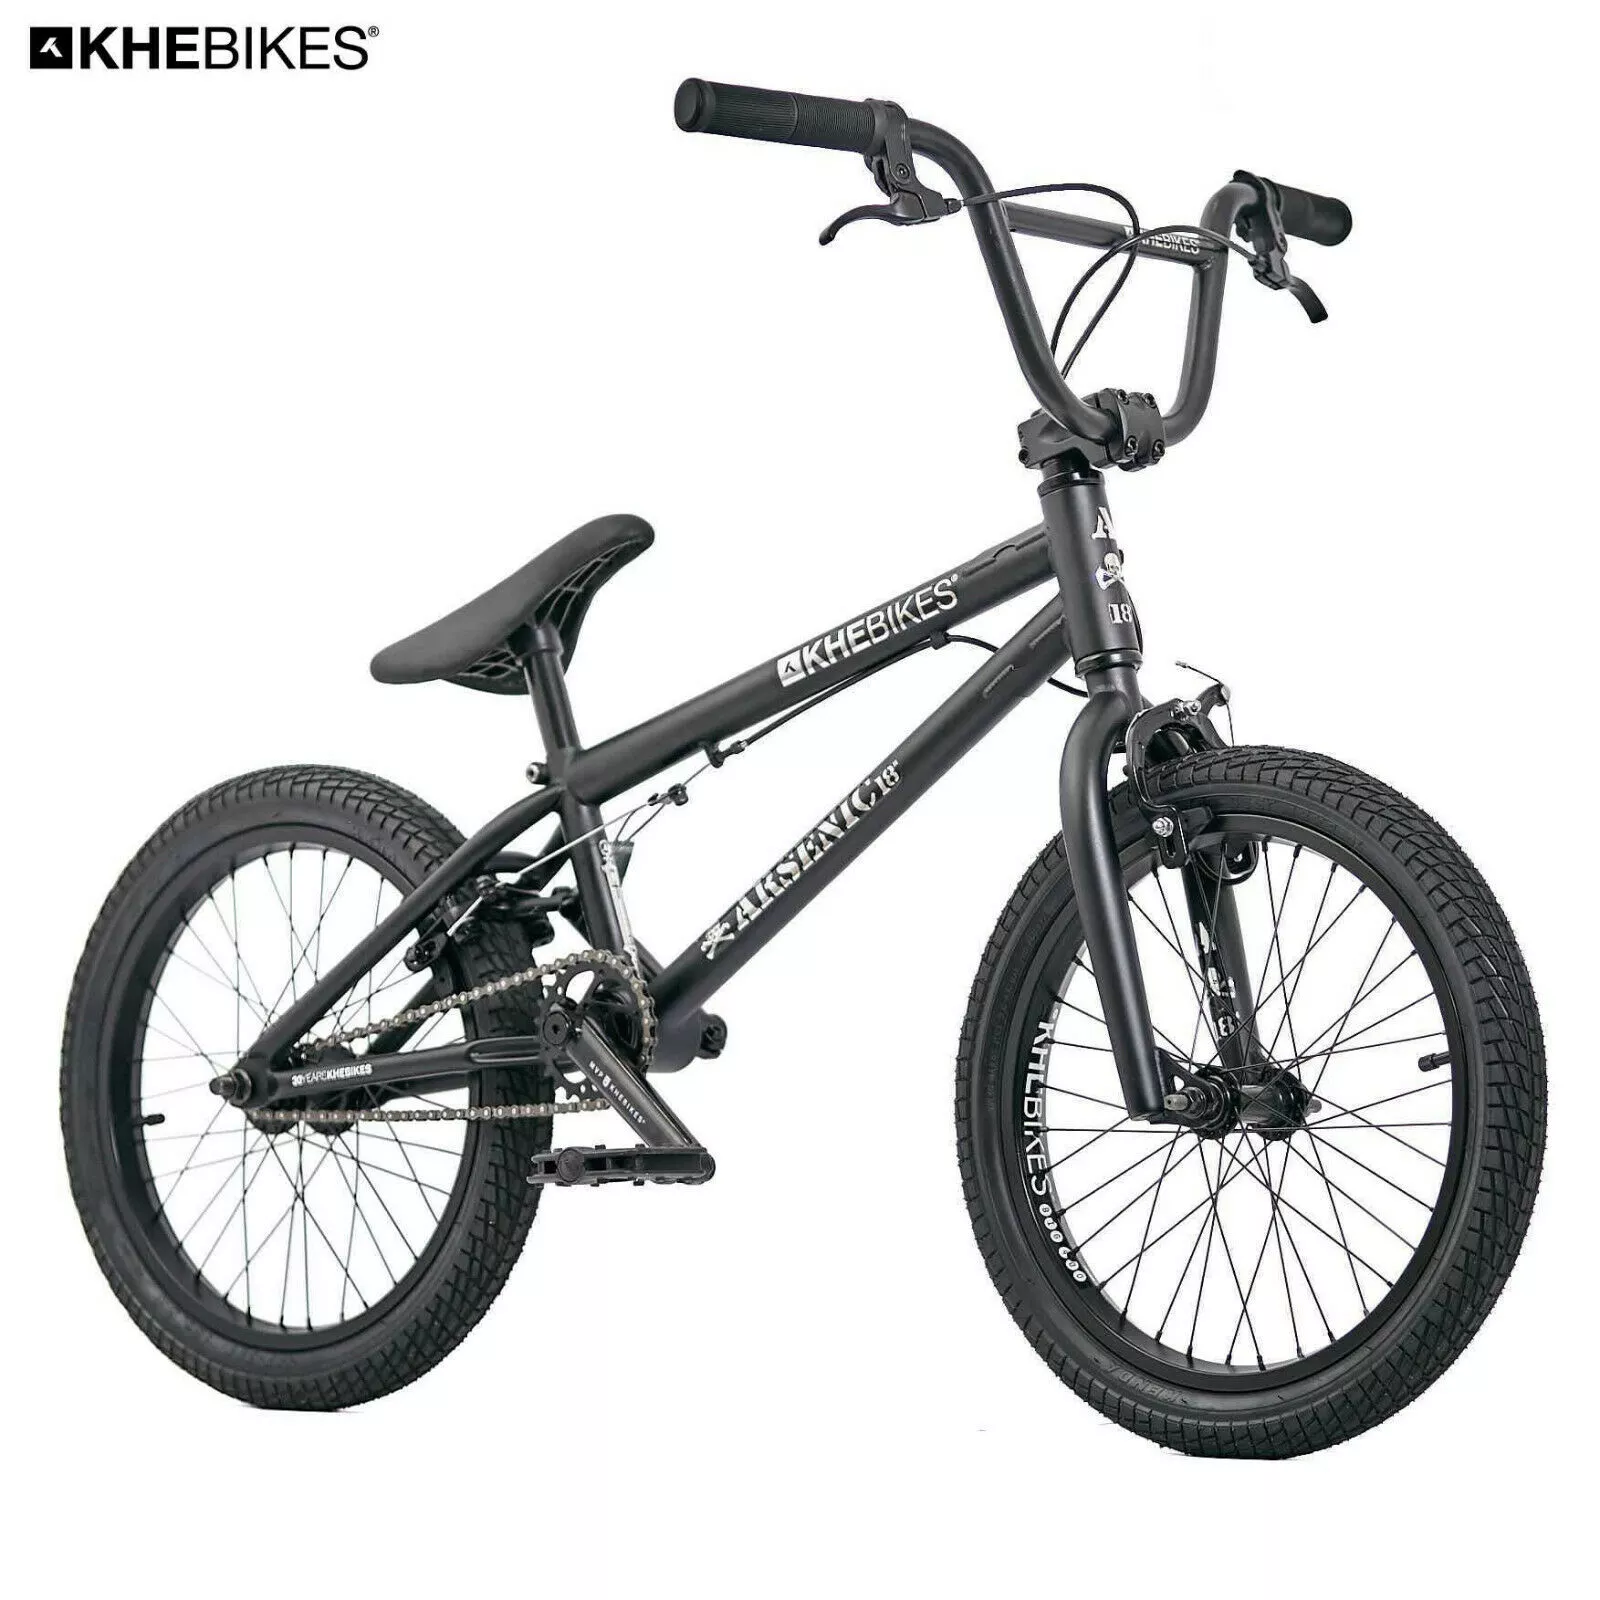 BMX Outlet N1: Bicicleta BMX KHE ARSENIC 18 pulgadas 10,1kg